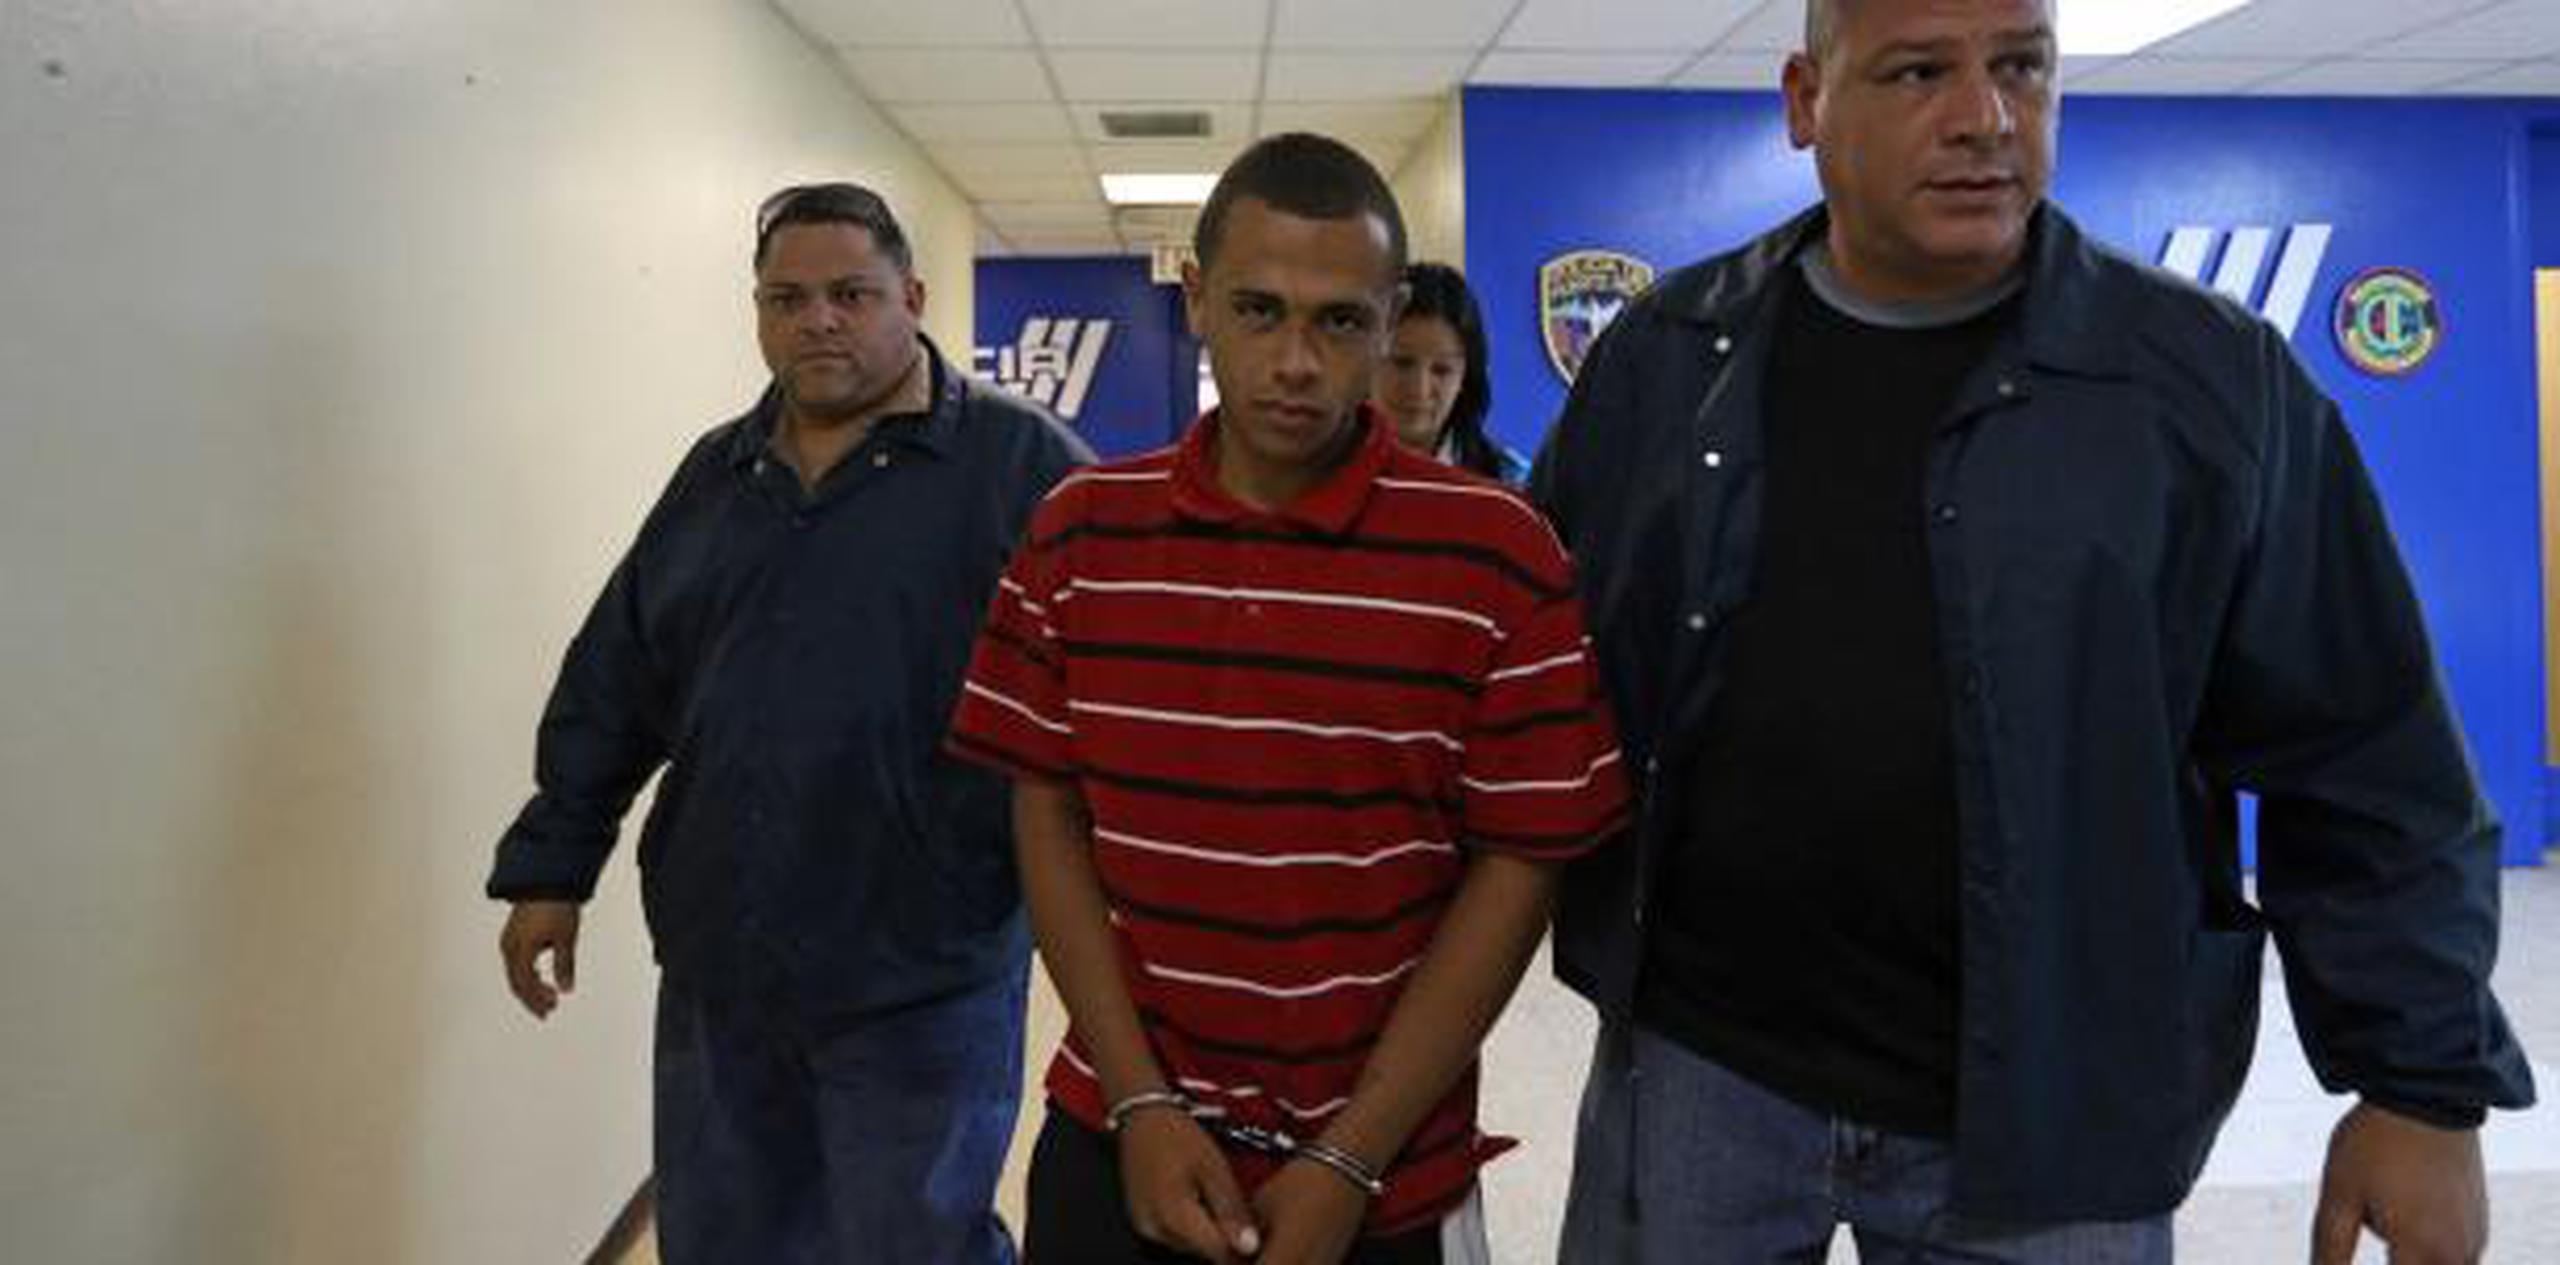 El acusado Santiago Montes Díaz, de 19 años, se encuentra ingresado en prisión con una fianza de $3.5 millones. (Archivo)